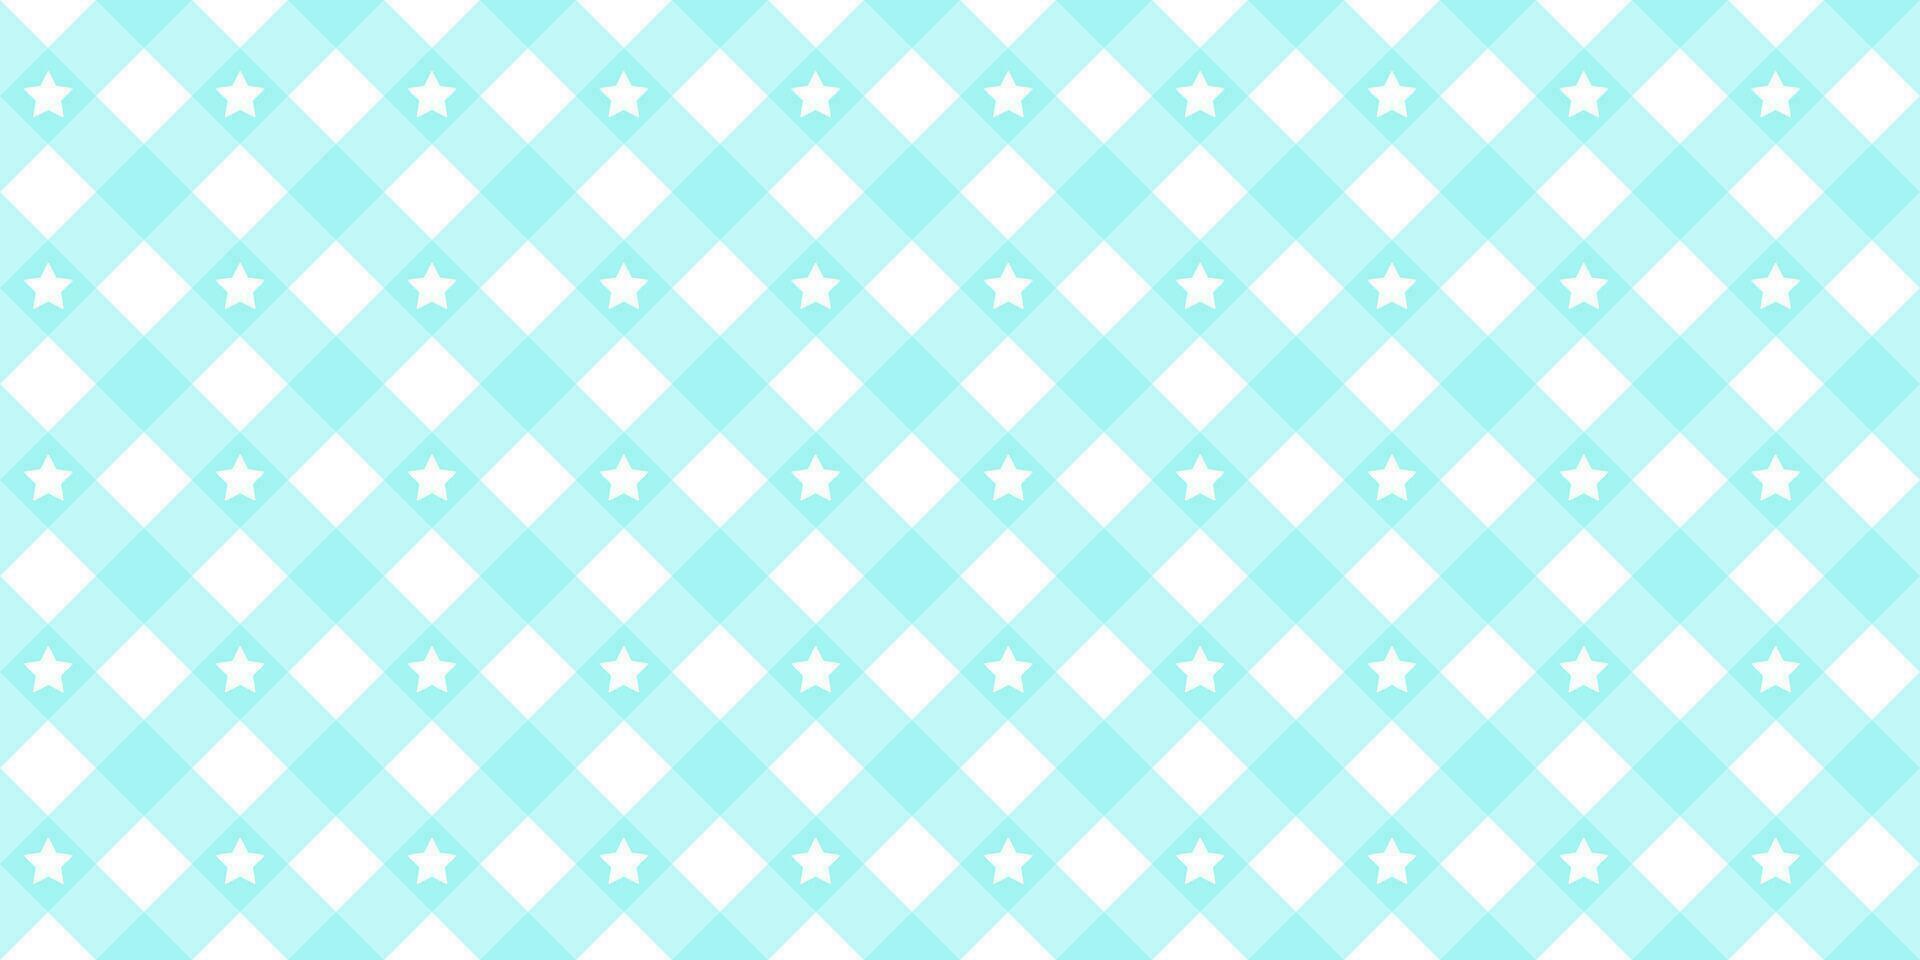 Gingham Star diagonal nahtlos Muster im Blau Pastell- Farbe. vichy Plaid Design zum Ostern Urlaub Textil- dekorativ. Vektor kariert Muster zum Stoff - - Picknick Decke, Tischdecke, Kleid, Serviette.